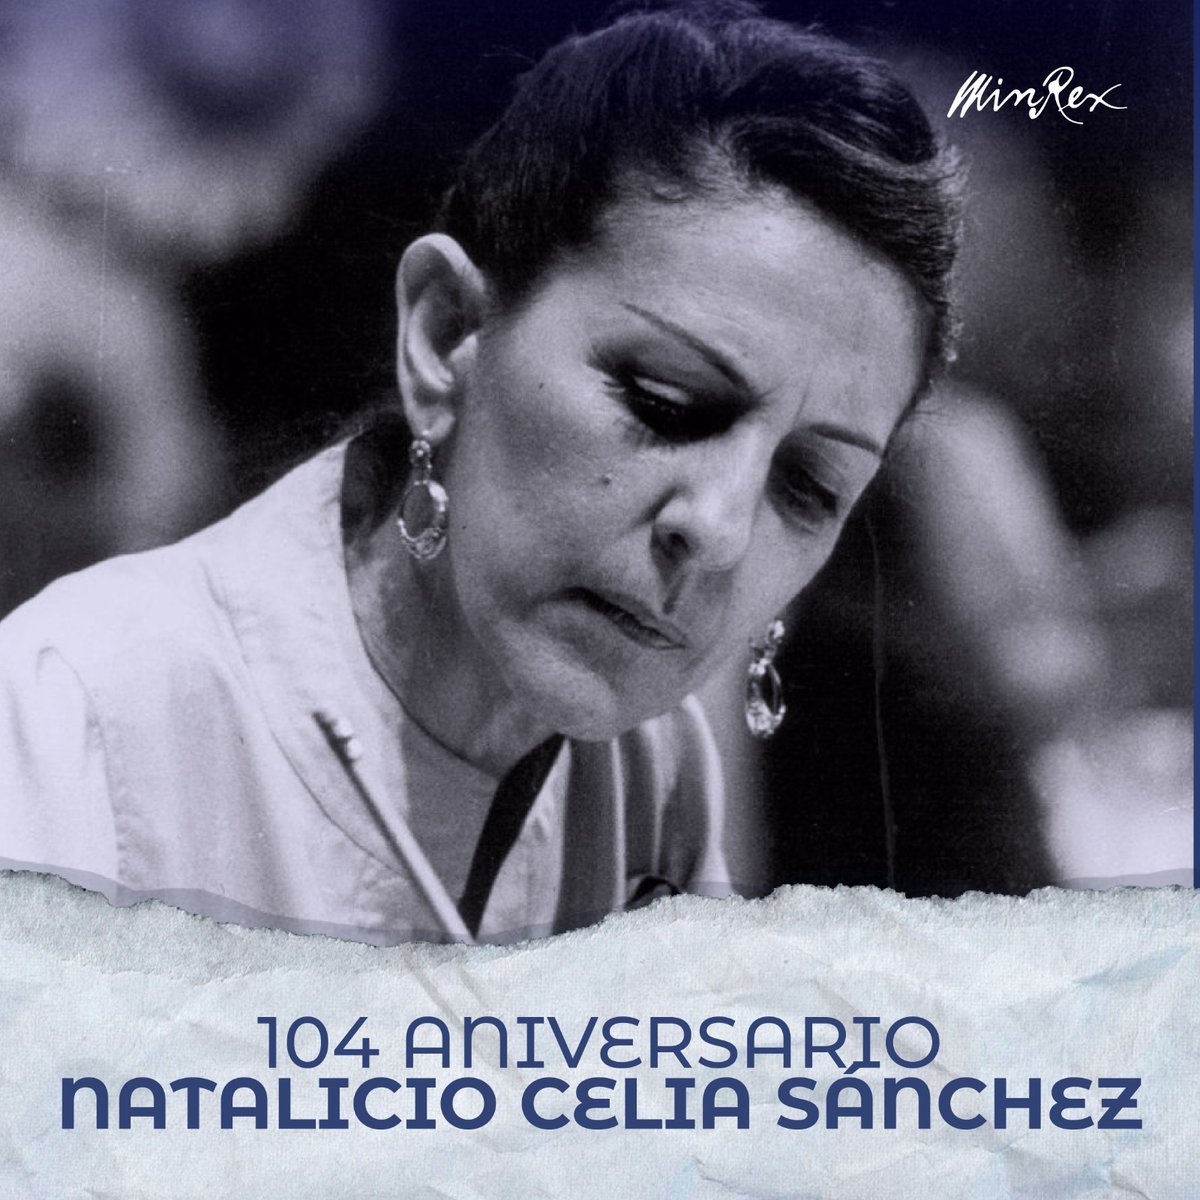 Recordamos hoy a Celia Sánchez Manduley, mujer imprescindible en la historia de #Cuba 🇨🇺, figura emblemática de la Revolución Cubana. Su legado perdura en el corazón de la nación y en la memoria colectiva de nuestro pueblo.